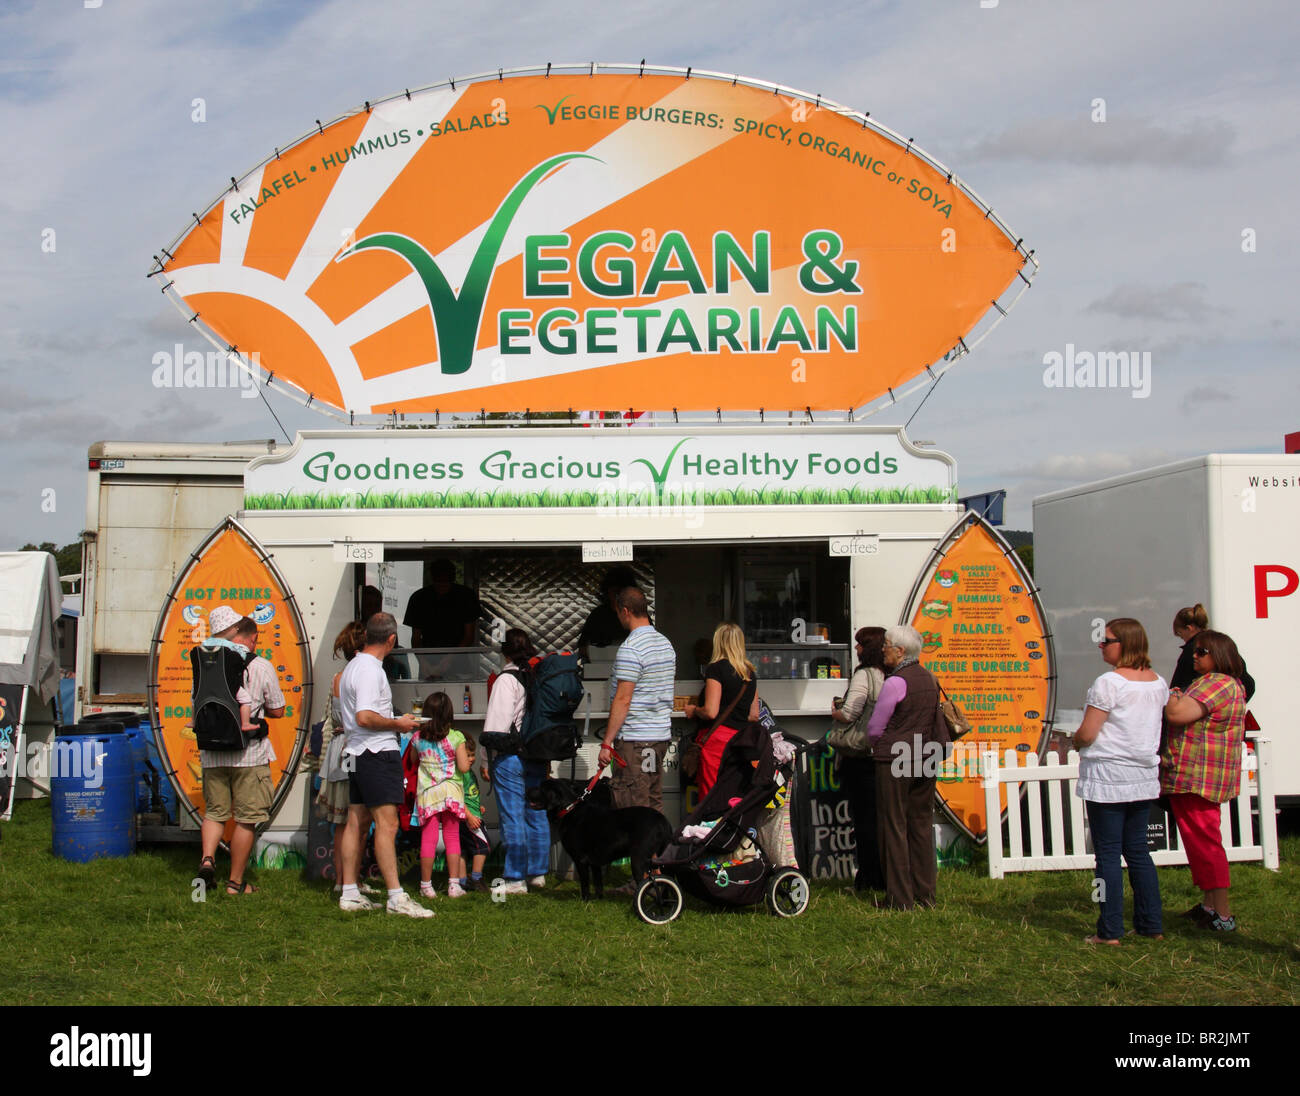 Vegane & vegetarische Caterer in Chatsworth Game Fair, Derbyshire, England, Großbritannien Stockfoto